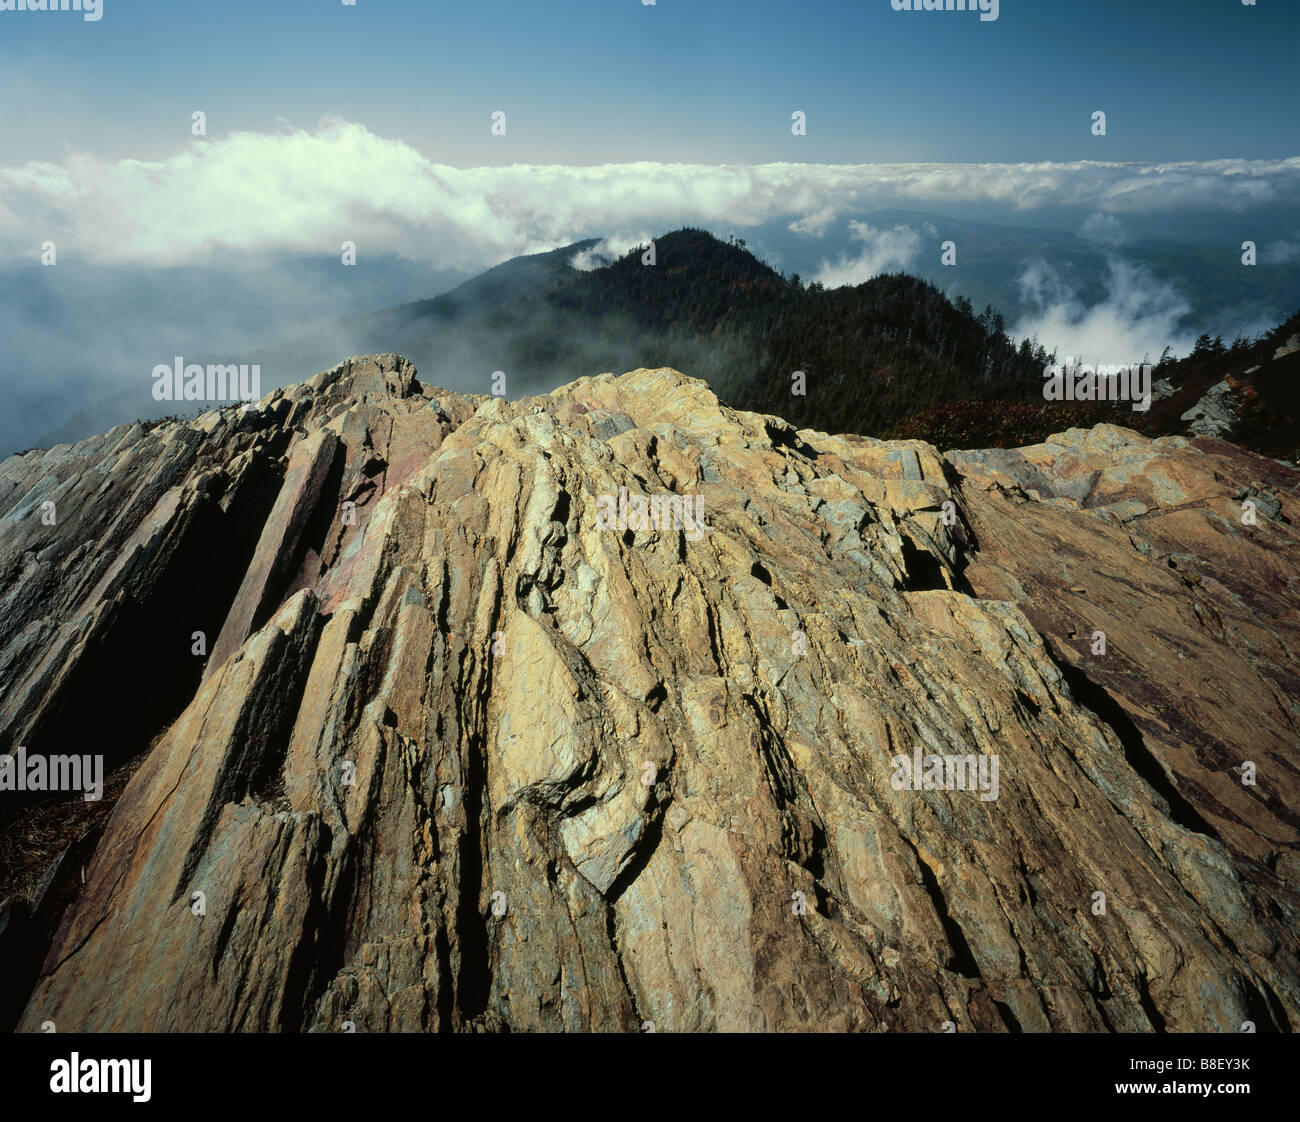 TENNESSEE - rocas expuestas en acantilados en el Great Smoky Mountains National Park. Foto de stock